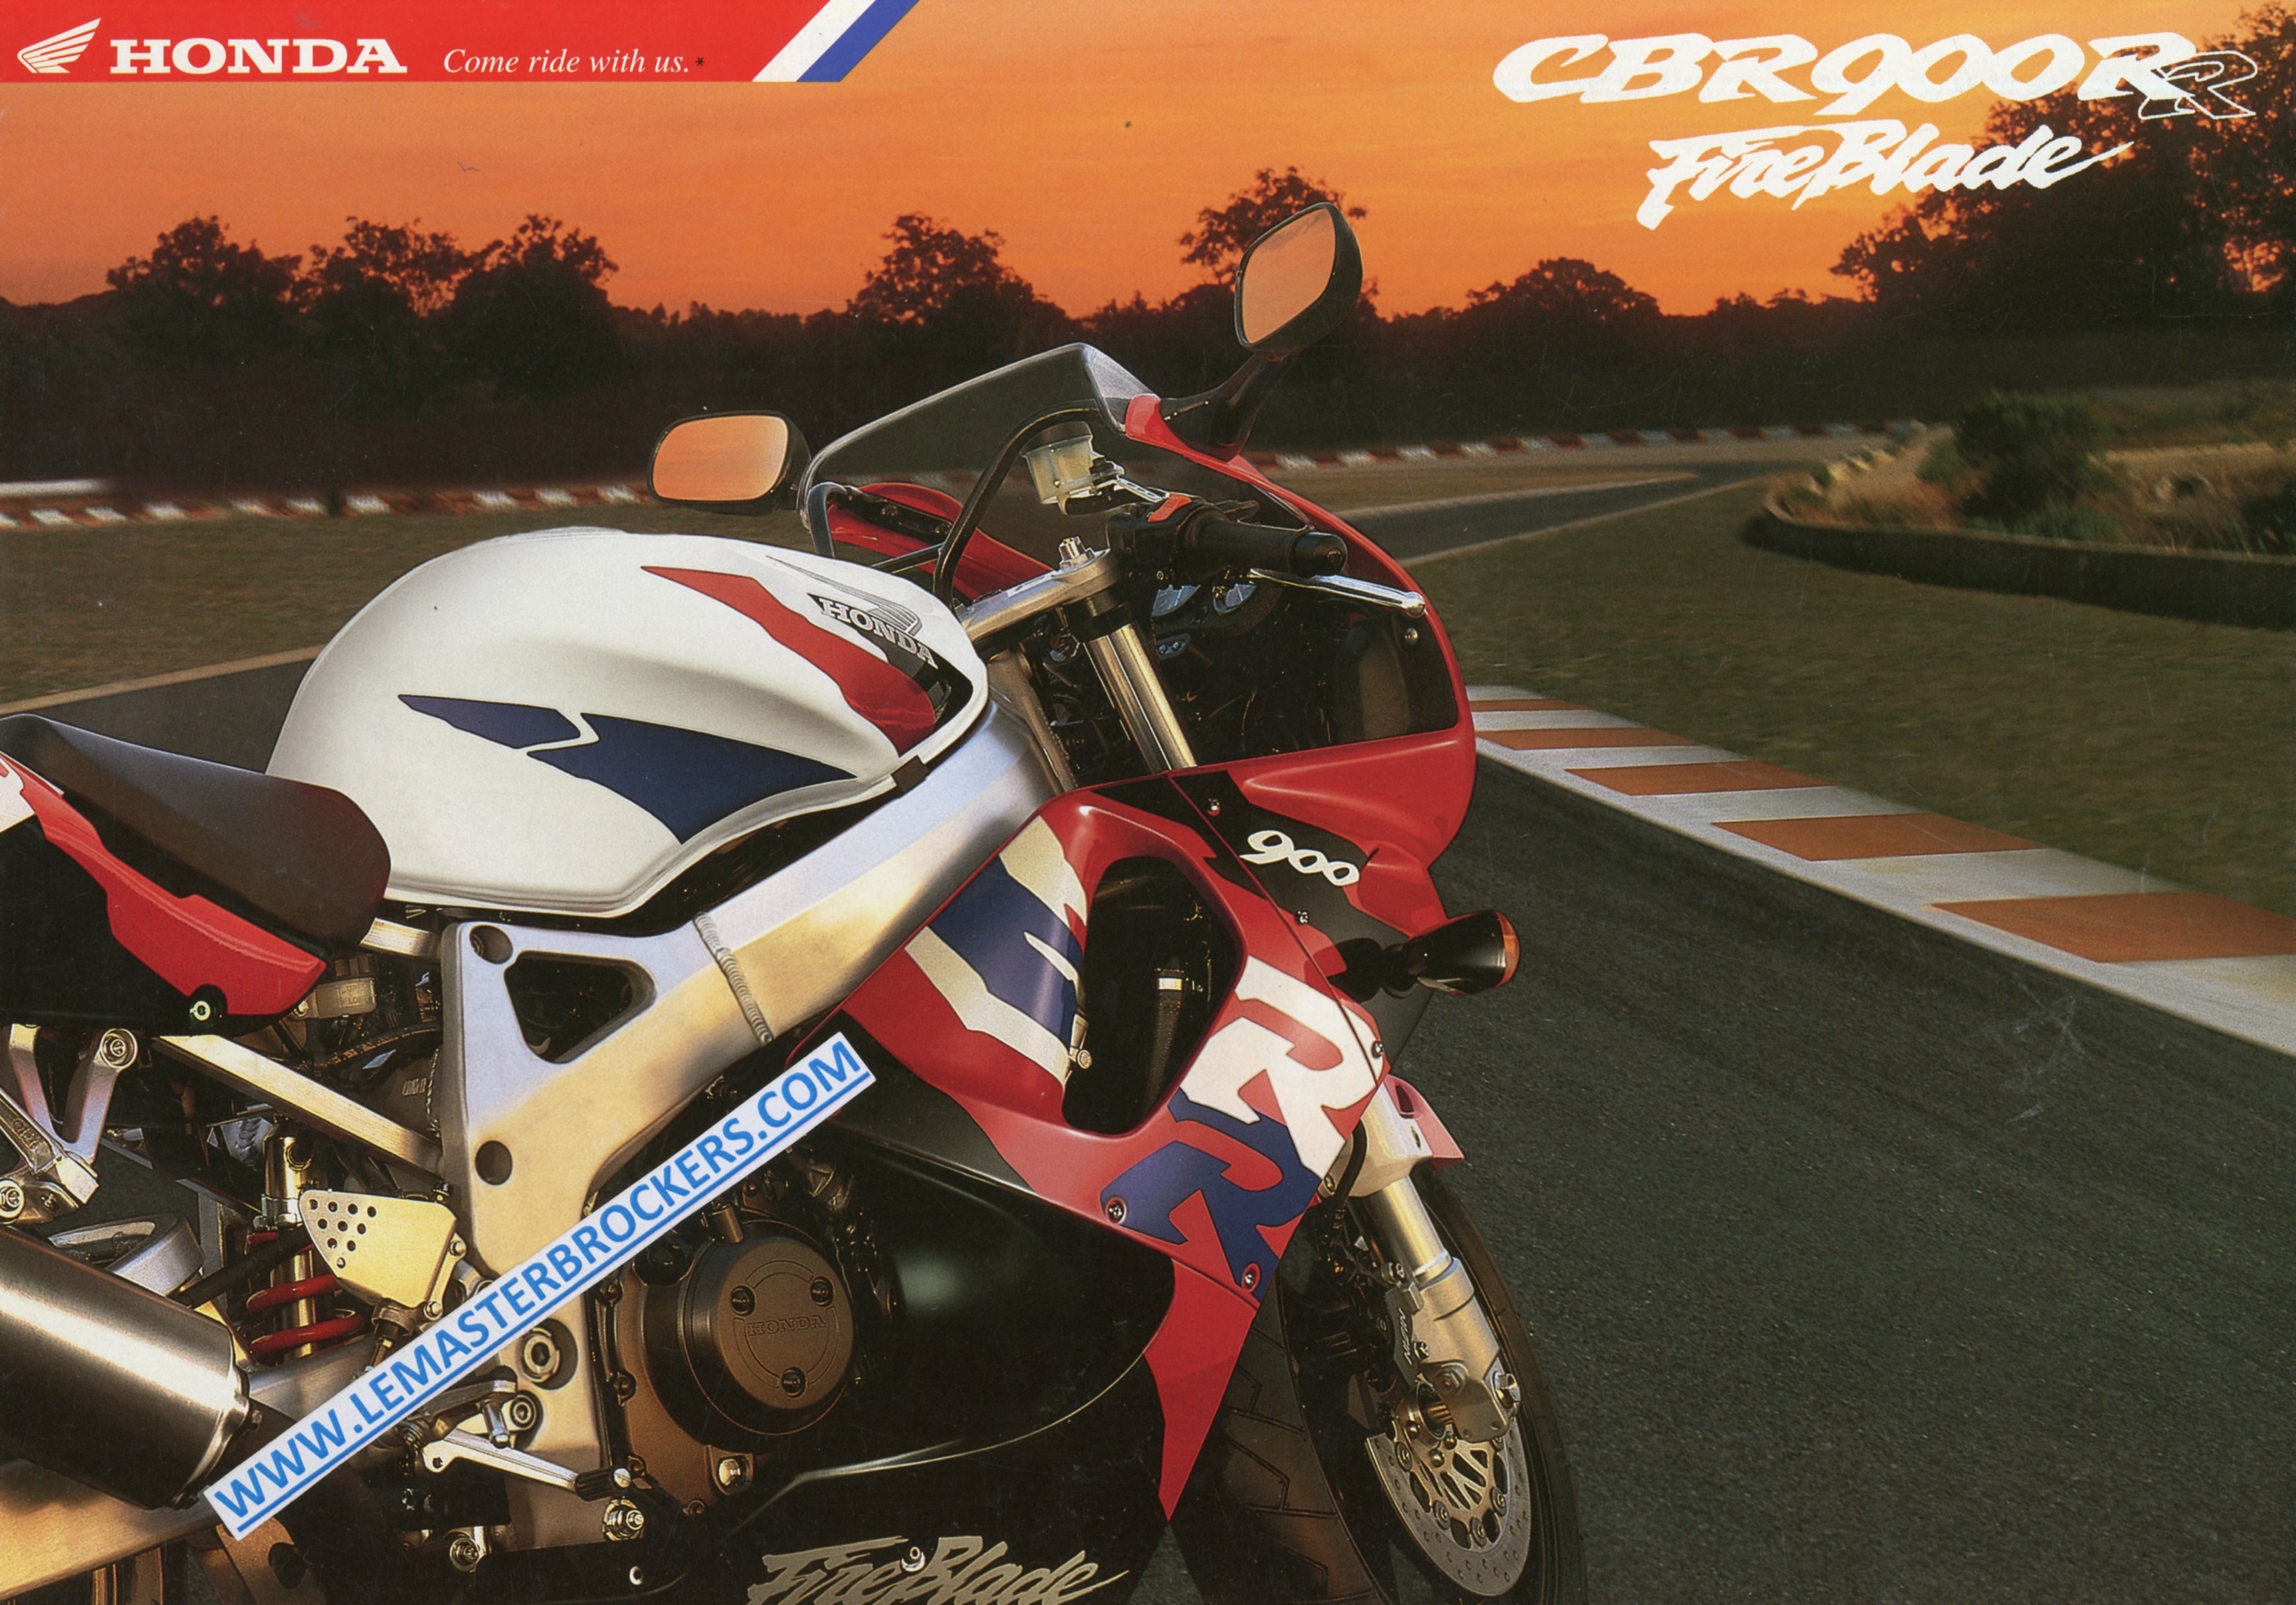 BROCHURE-MOTO-HONDA-CBR-CBR900RR-FIREBLADE-LEMASTERBROCKERS-1996